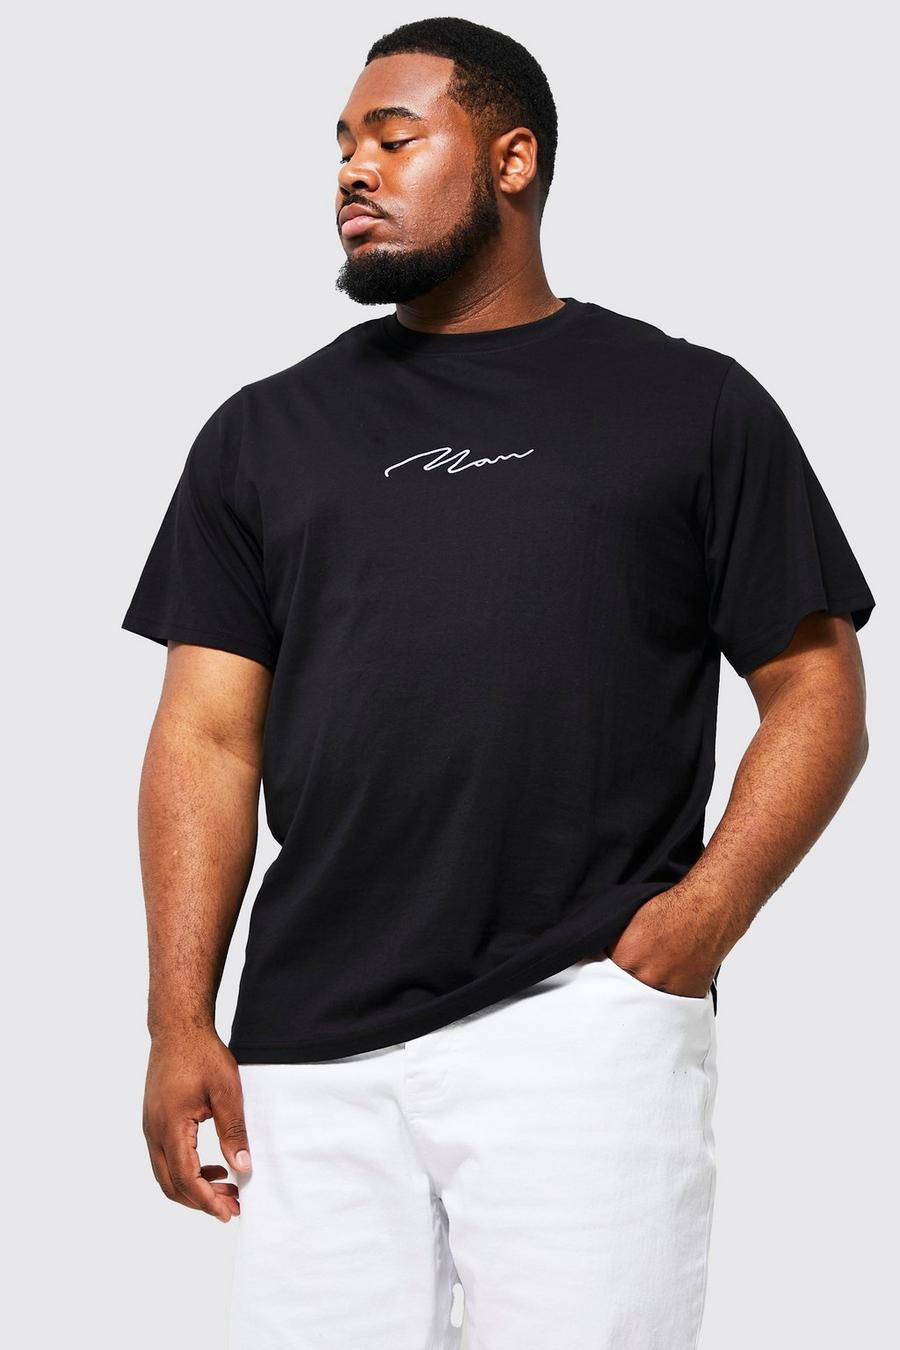 T-shirt Plus Size con scritta Man, Black nero